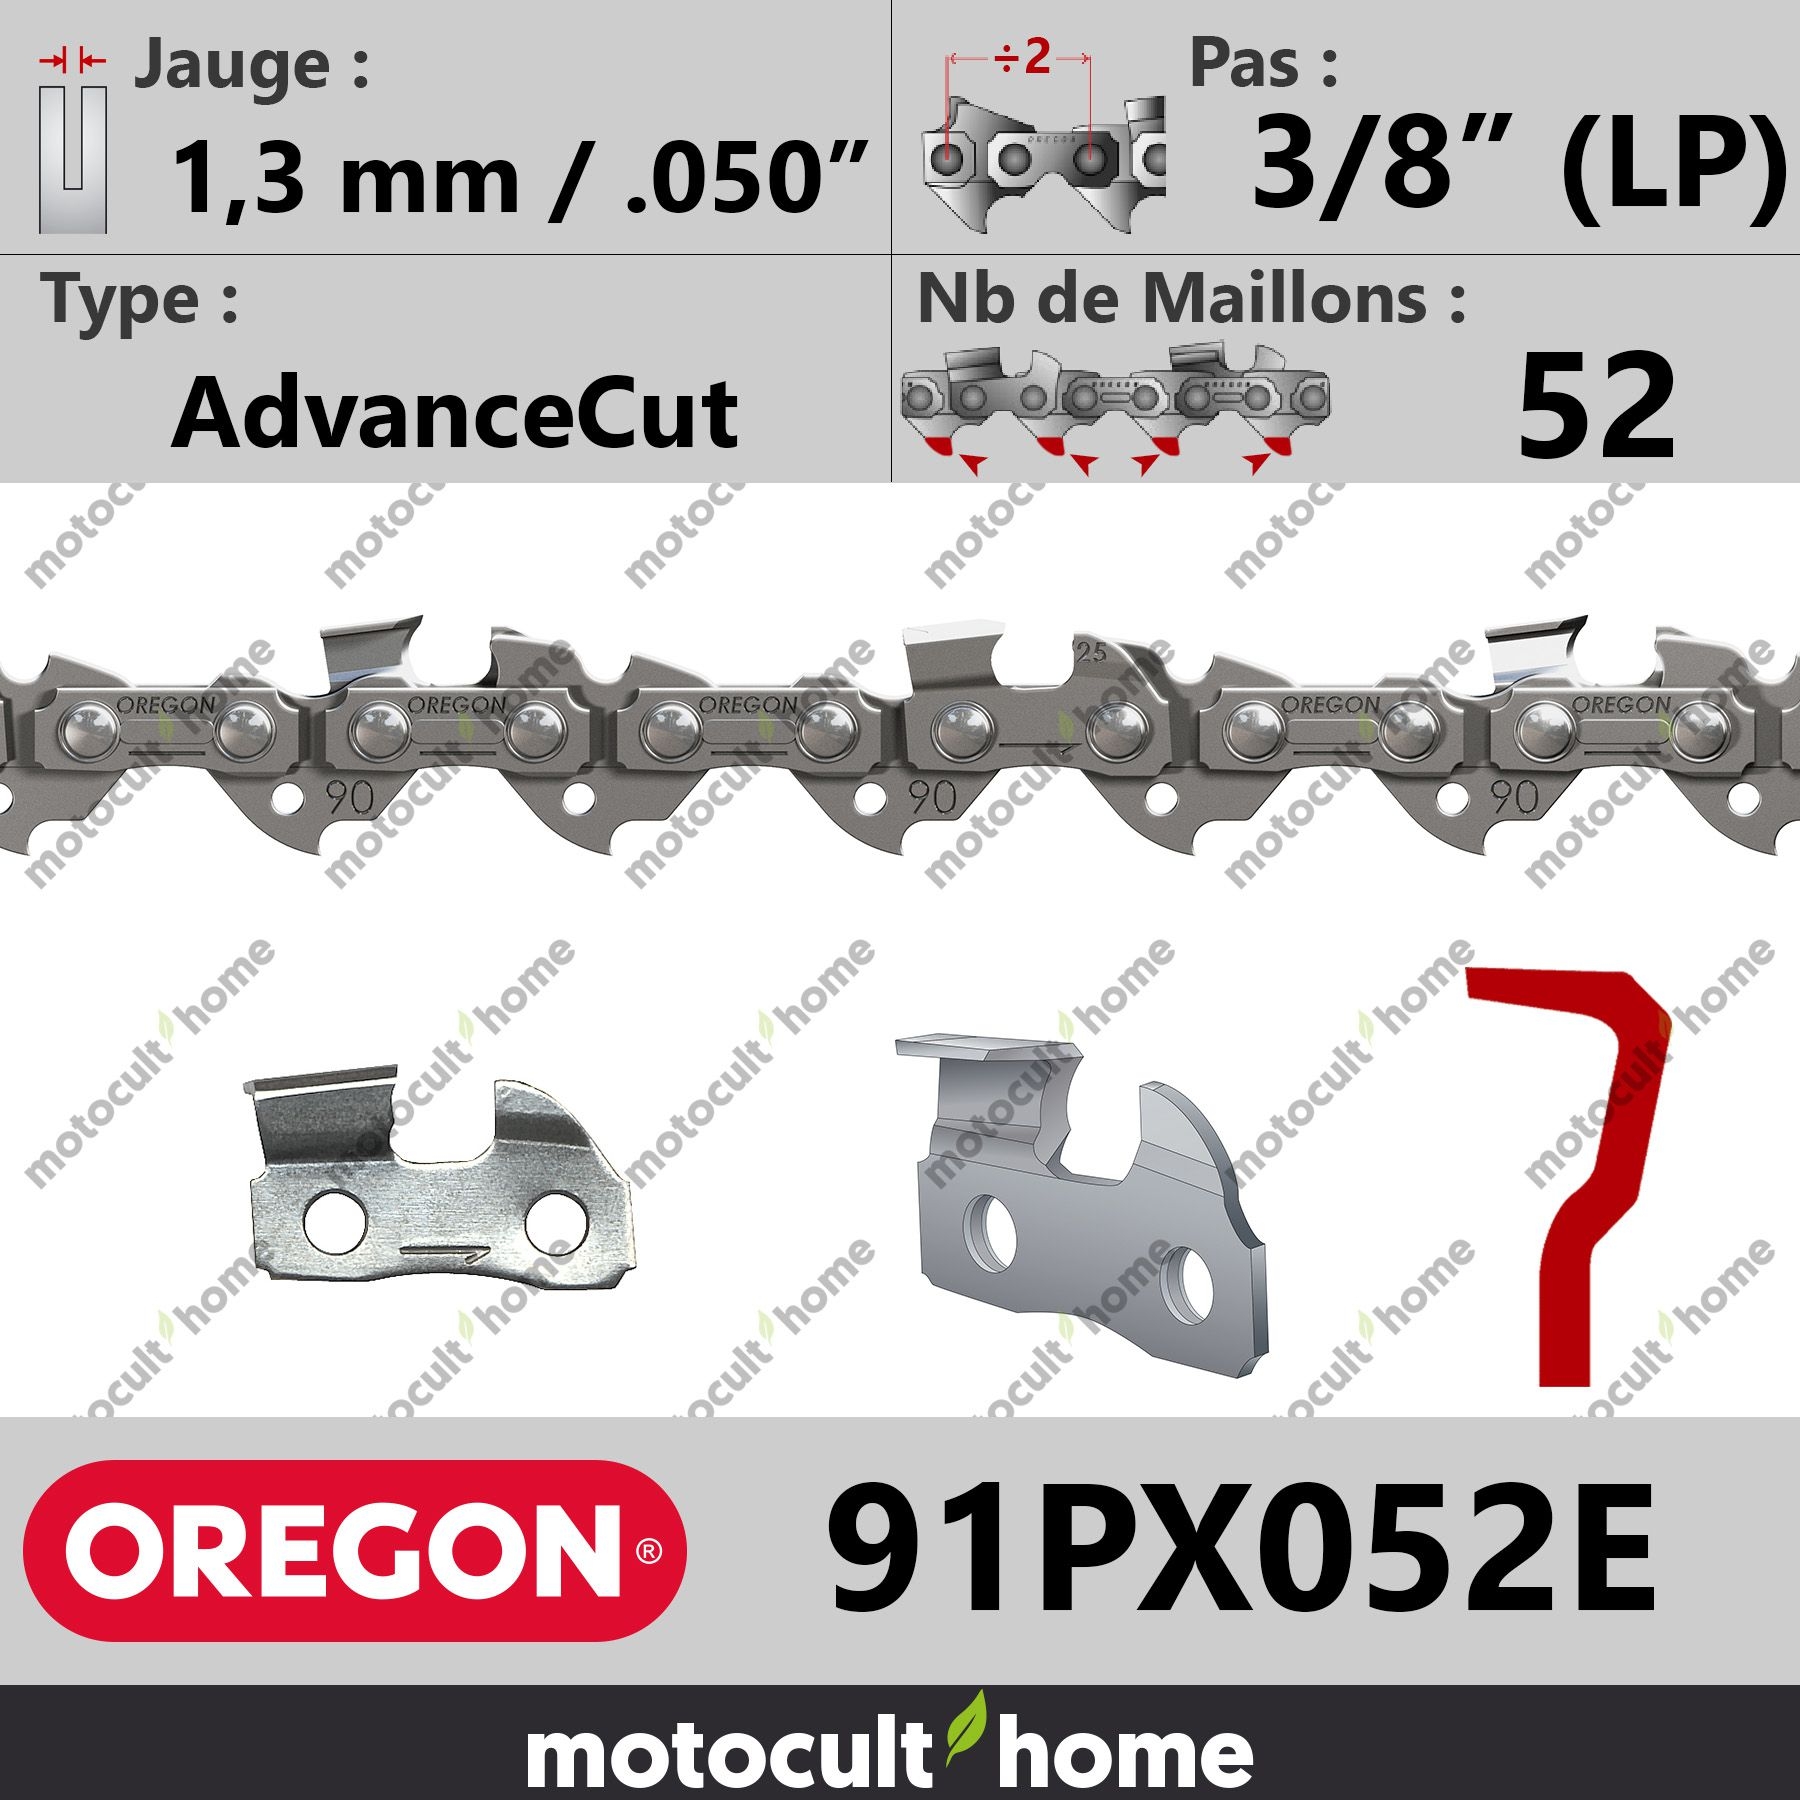 Chaîne de Tronçonneuse Oregon 91PX052E AdvanceCut 3/8 (LP) 1,3 mm